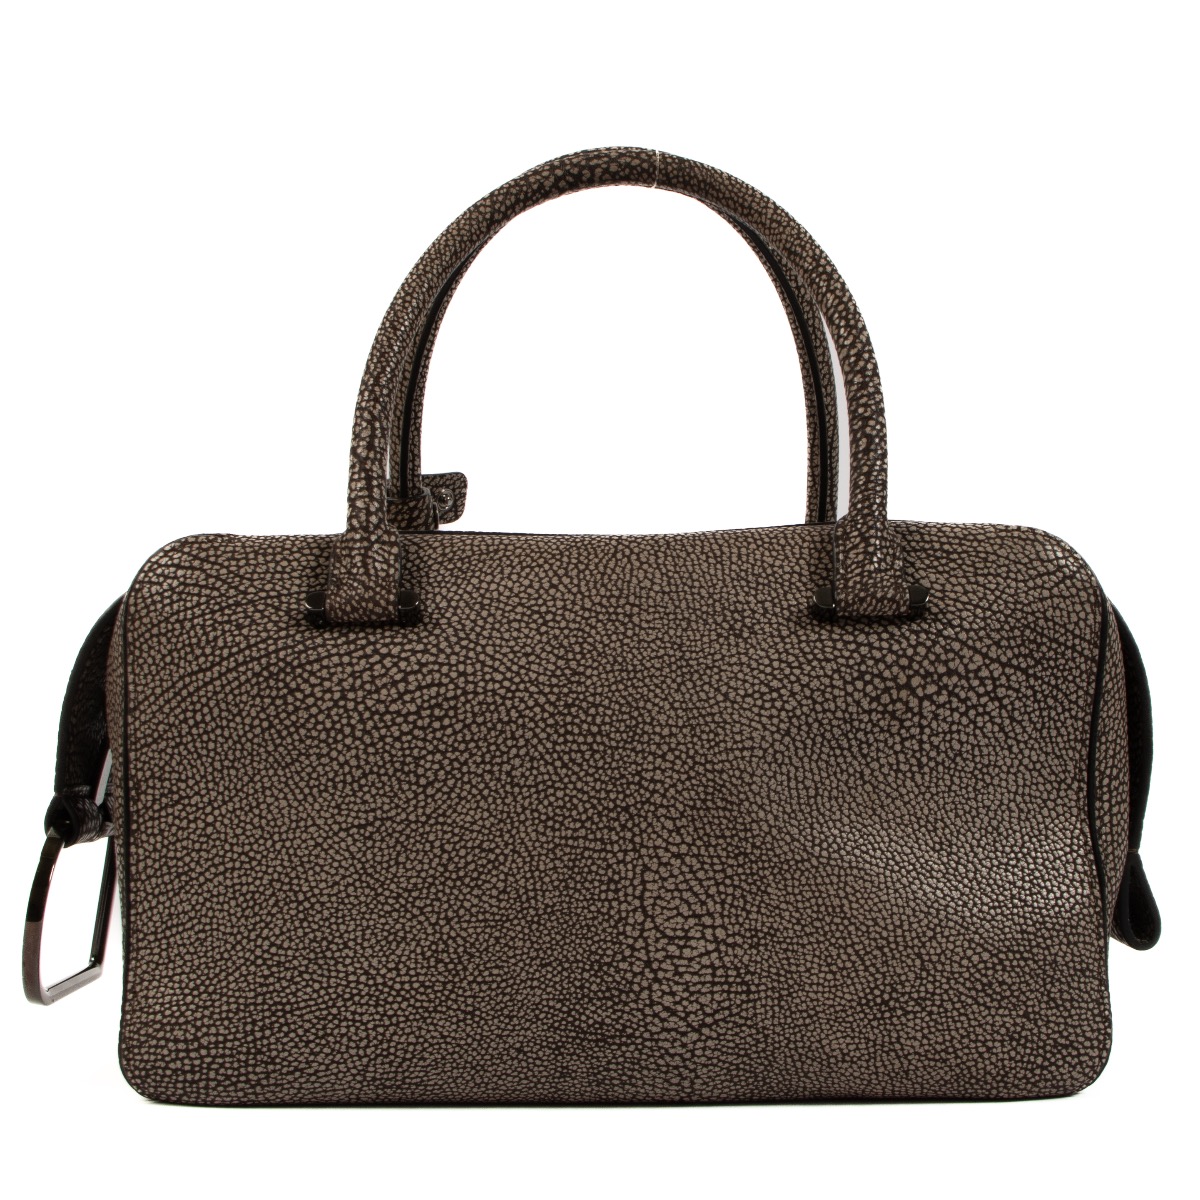 Delvaux Genuine Leather One Shoulder Handbag Brown Leather Bag Used | eBay